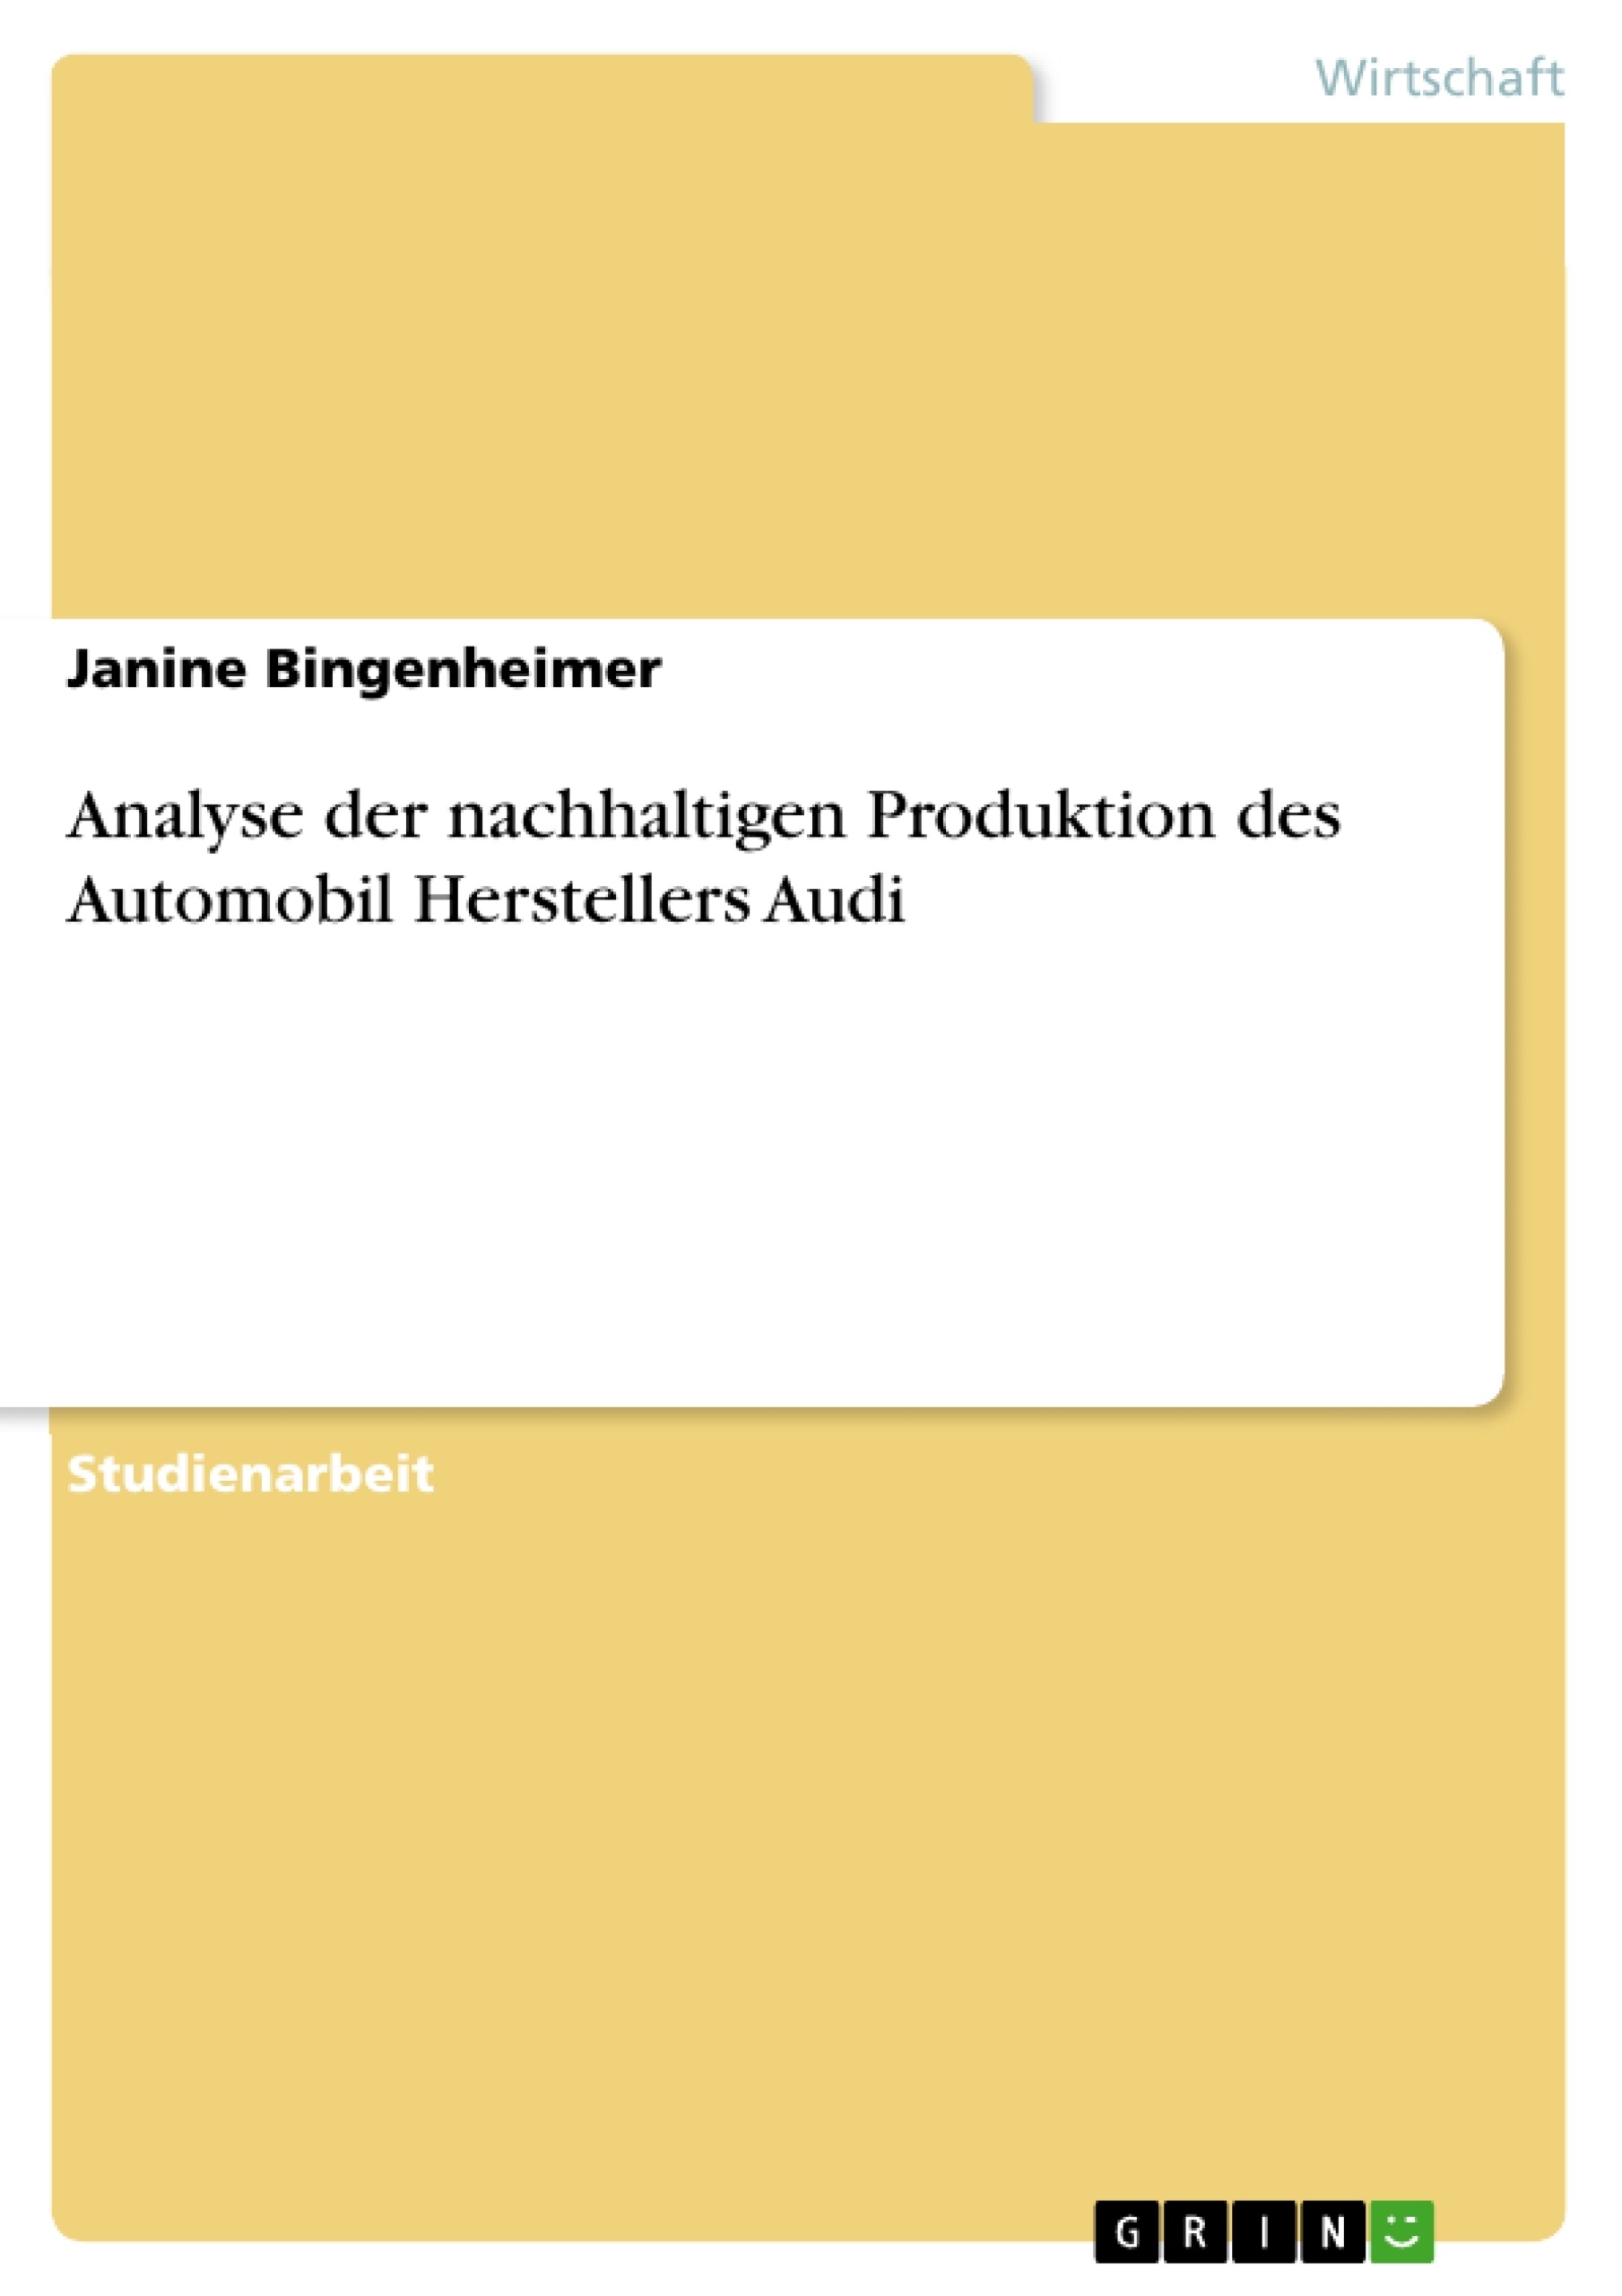 Titel: Analyse der nachhaltigen Produktion des Automobil Herstellers Audi